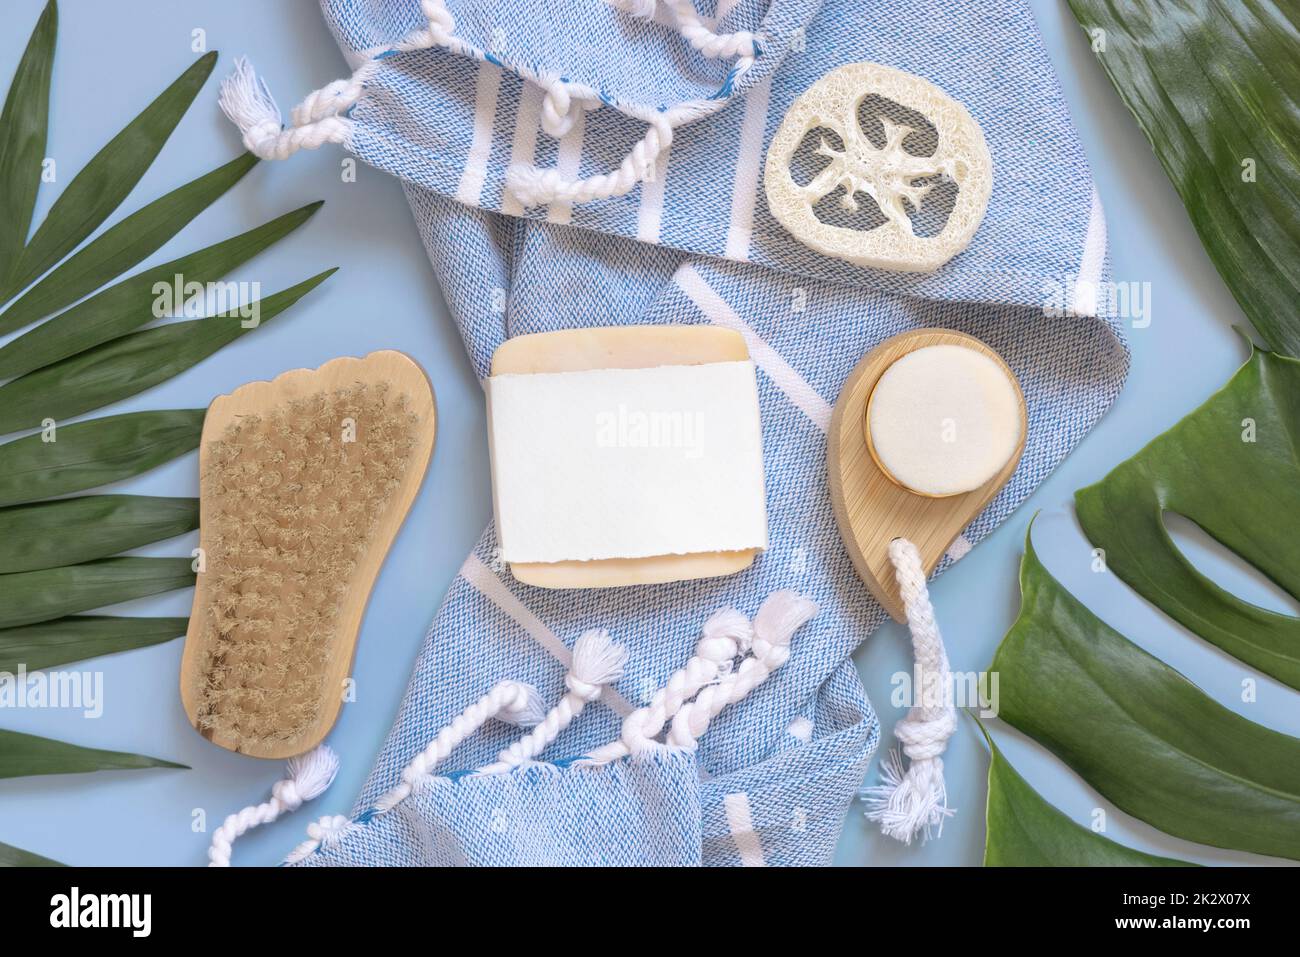 Porte-savon fait main sur une serviette de bain bleue près des feuilles tropicales vue de dessus, maquette Banque D'Images